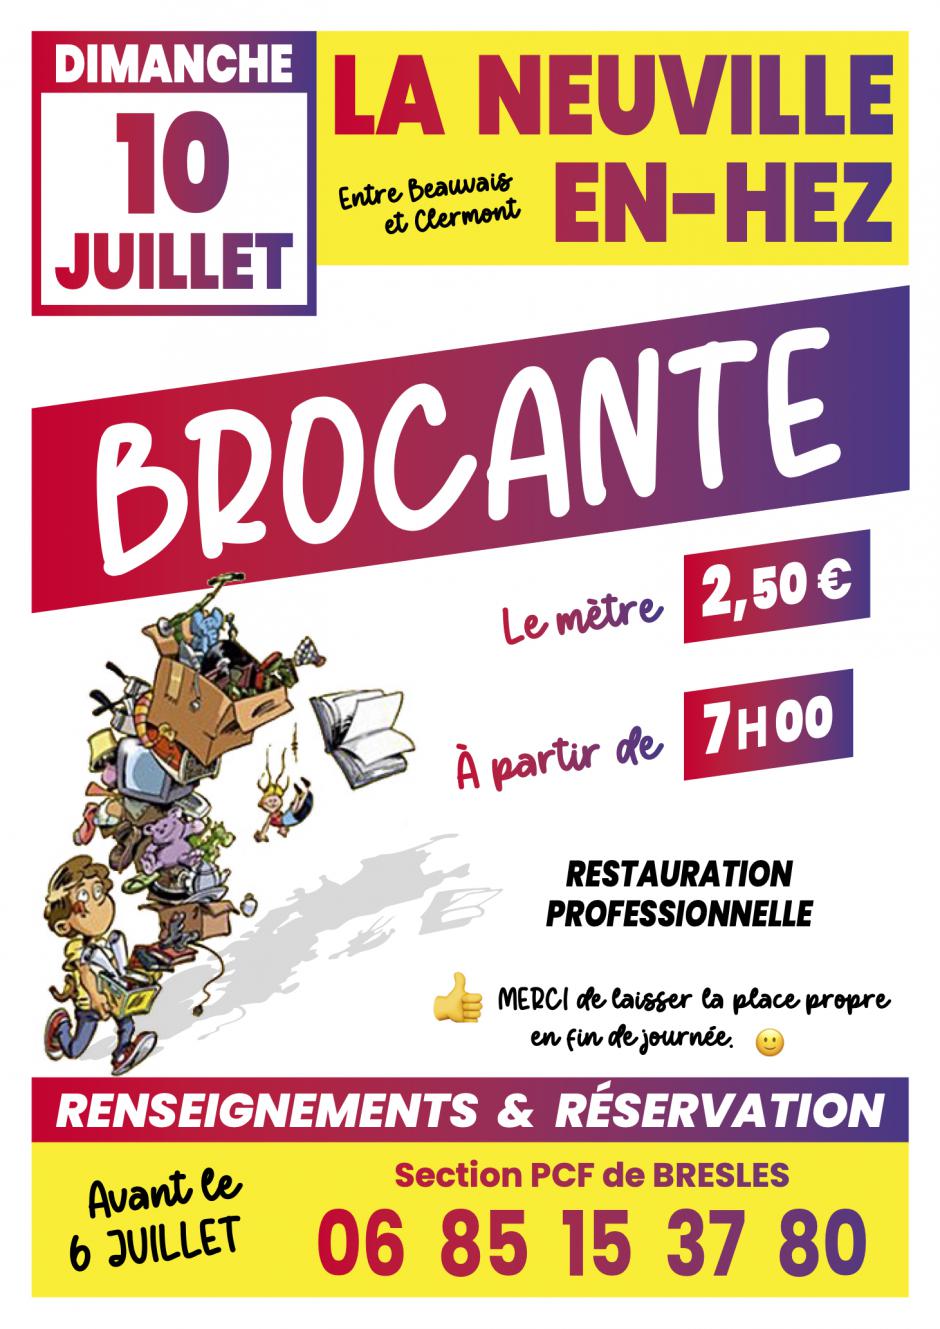 10 juillet, La Neuville-en-Hez - Brocante de la section PCF de Bresles